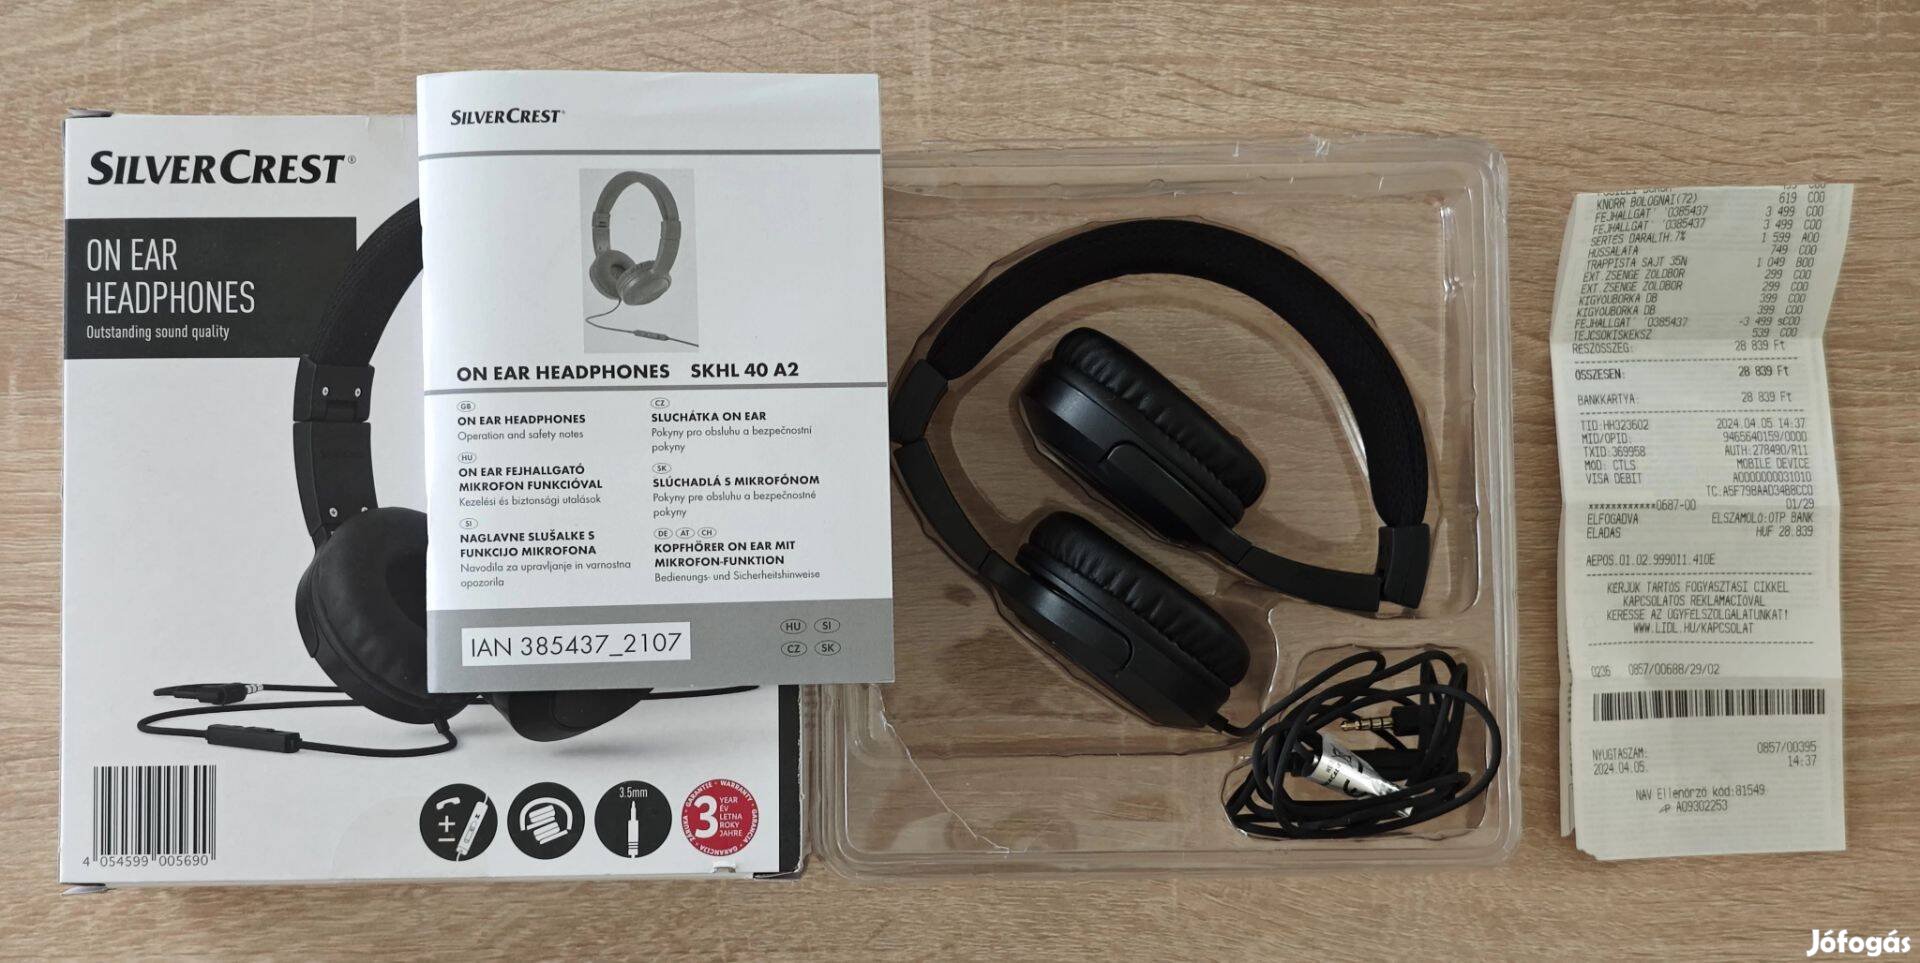 Silvercrest mikrofonos fejhallgató eladó, szinte Új és garanciális